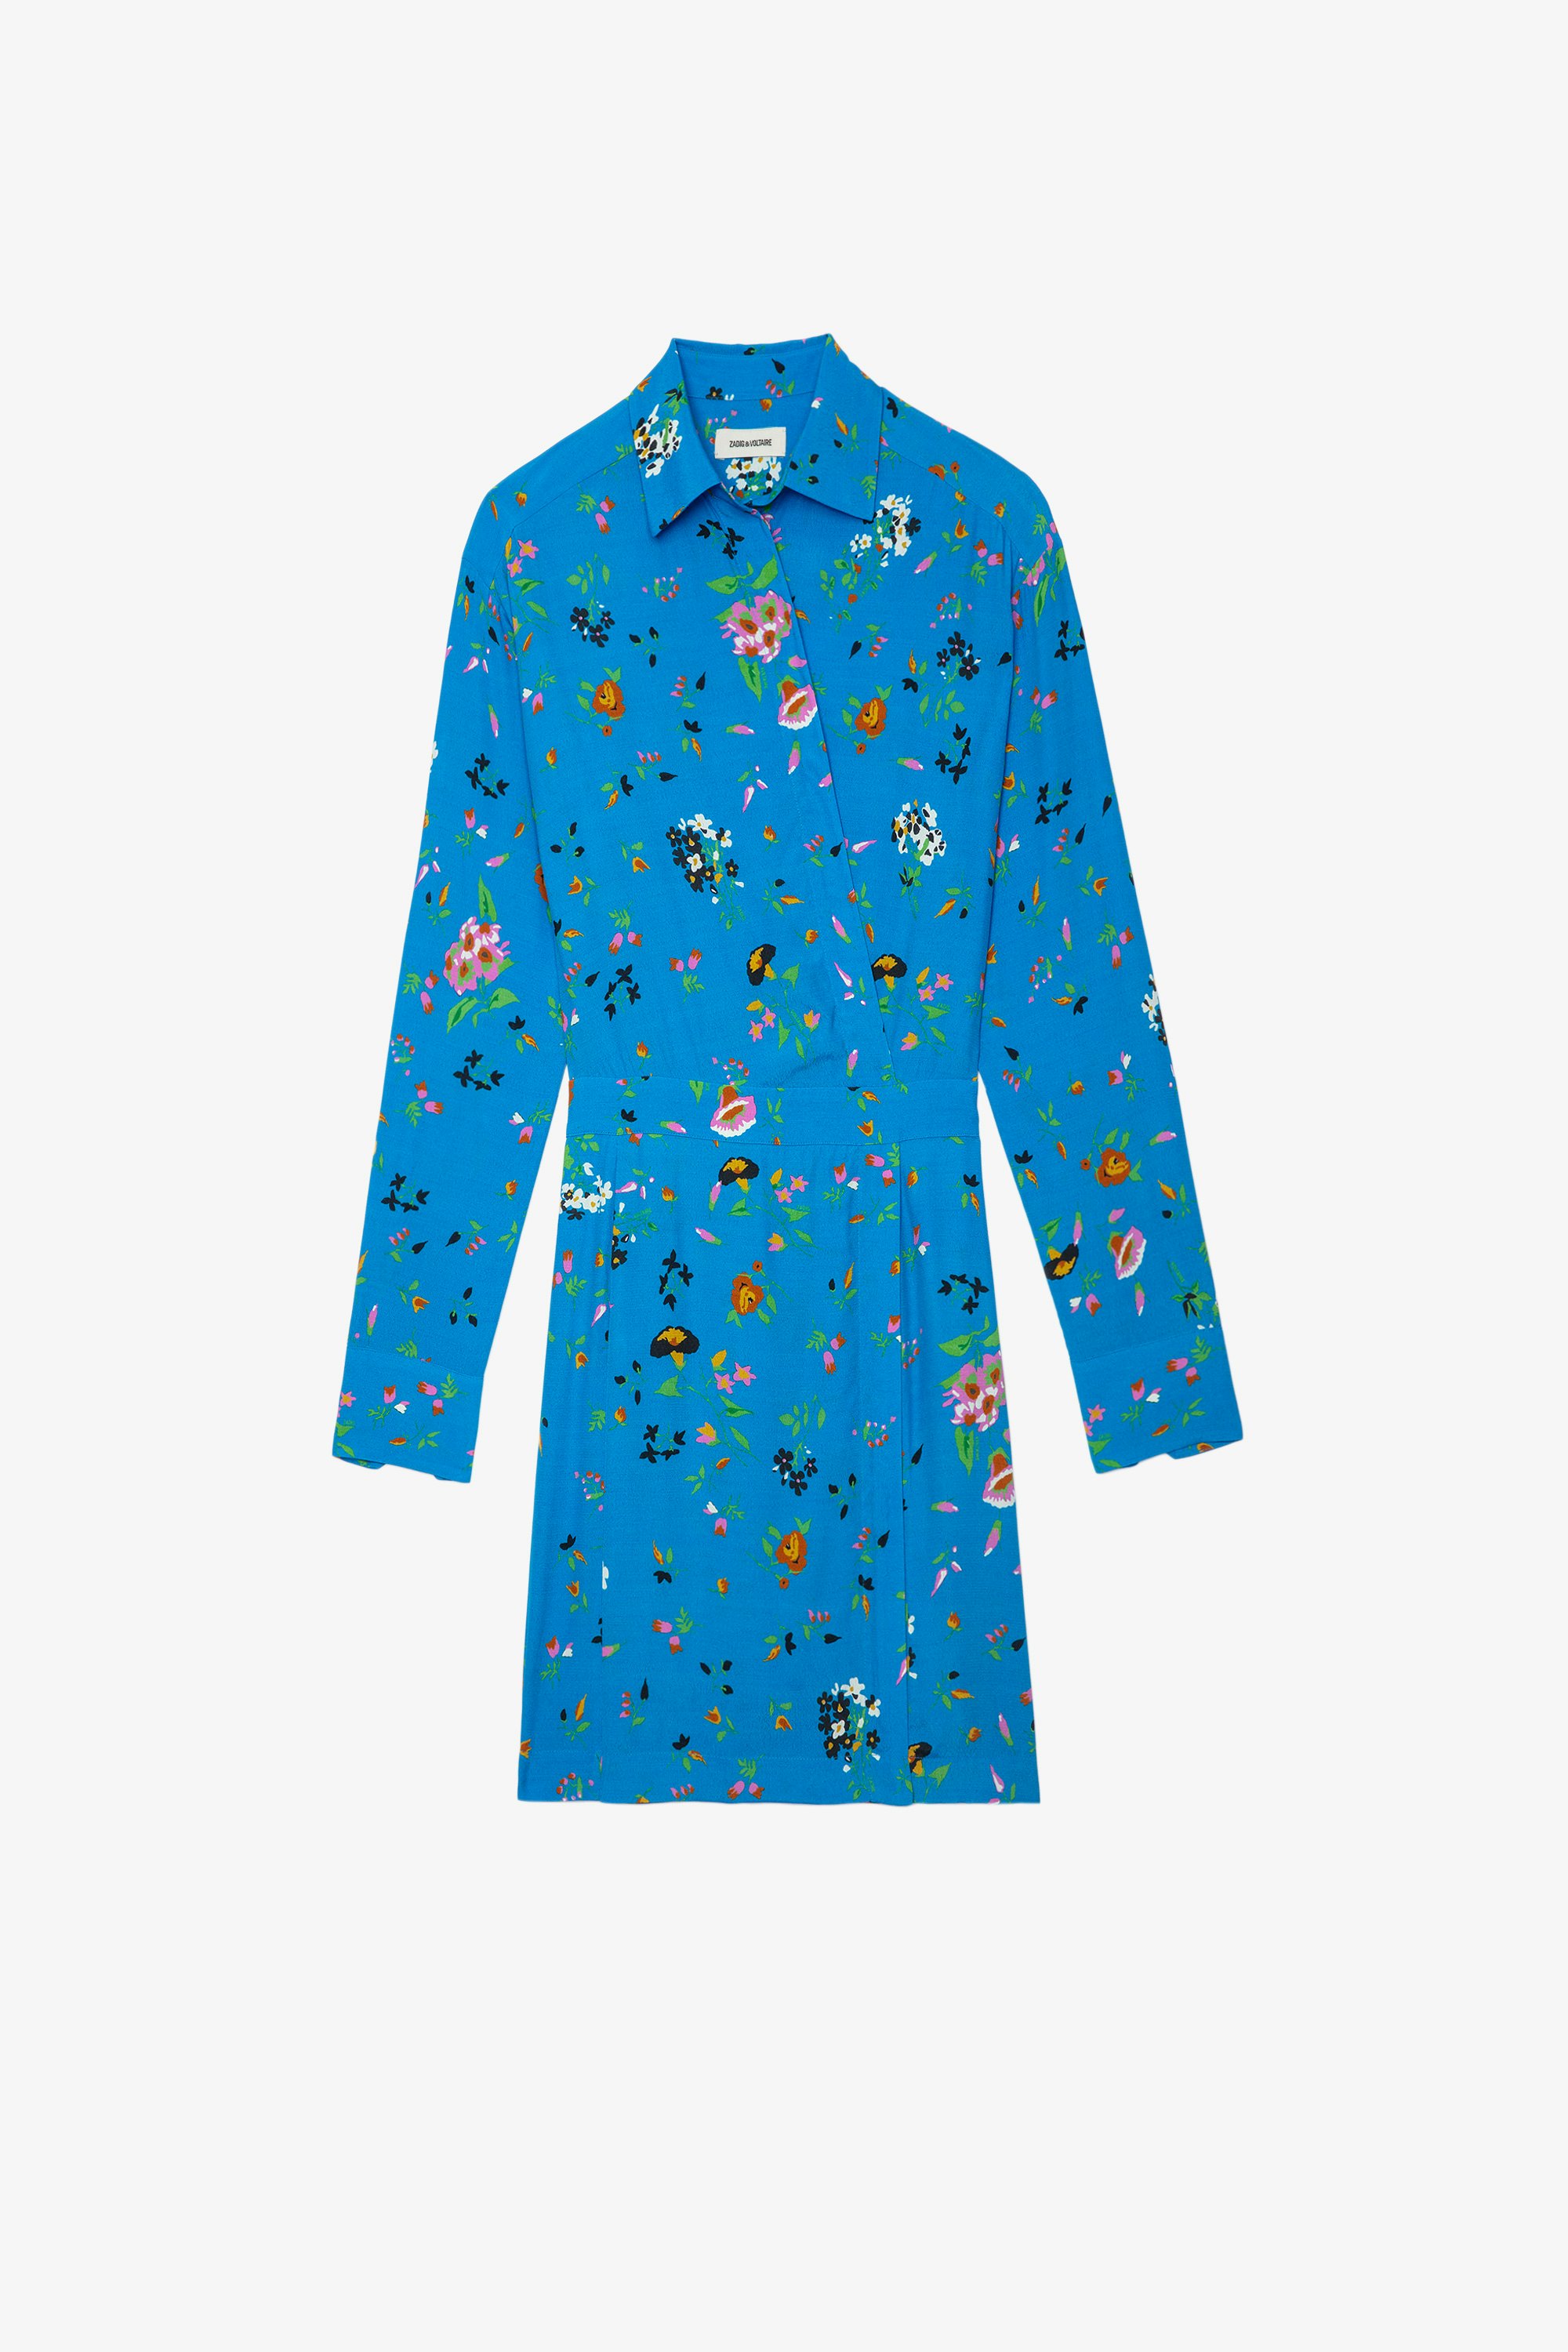 Kleid Ravy Kurzes blaues Damenkleid mit Ausschnitt in Wickeloptik, langen Ärmeln und Blumenprint